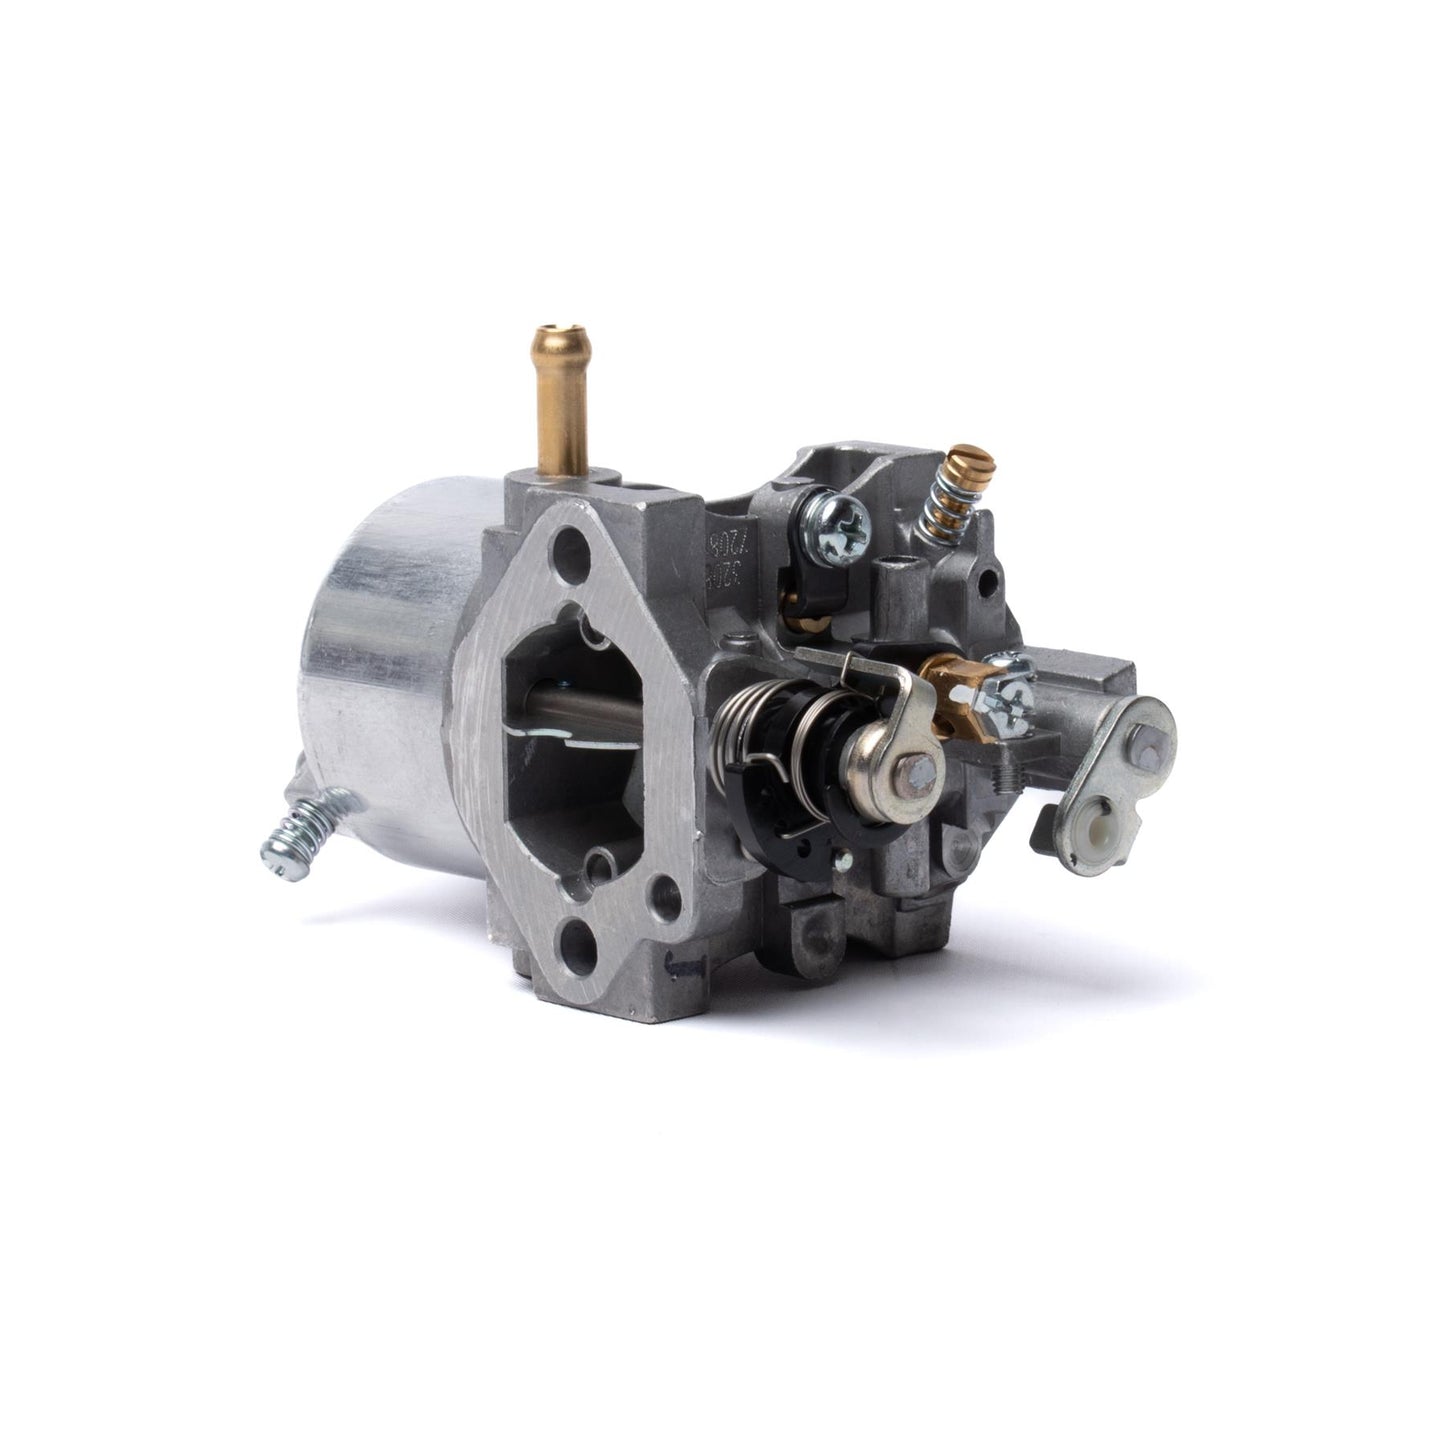 John Deere Carburetor Kit - AM108531 MIU10614